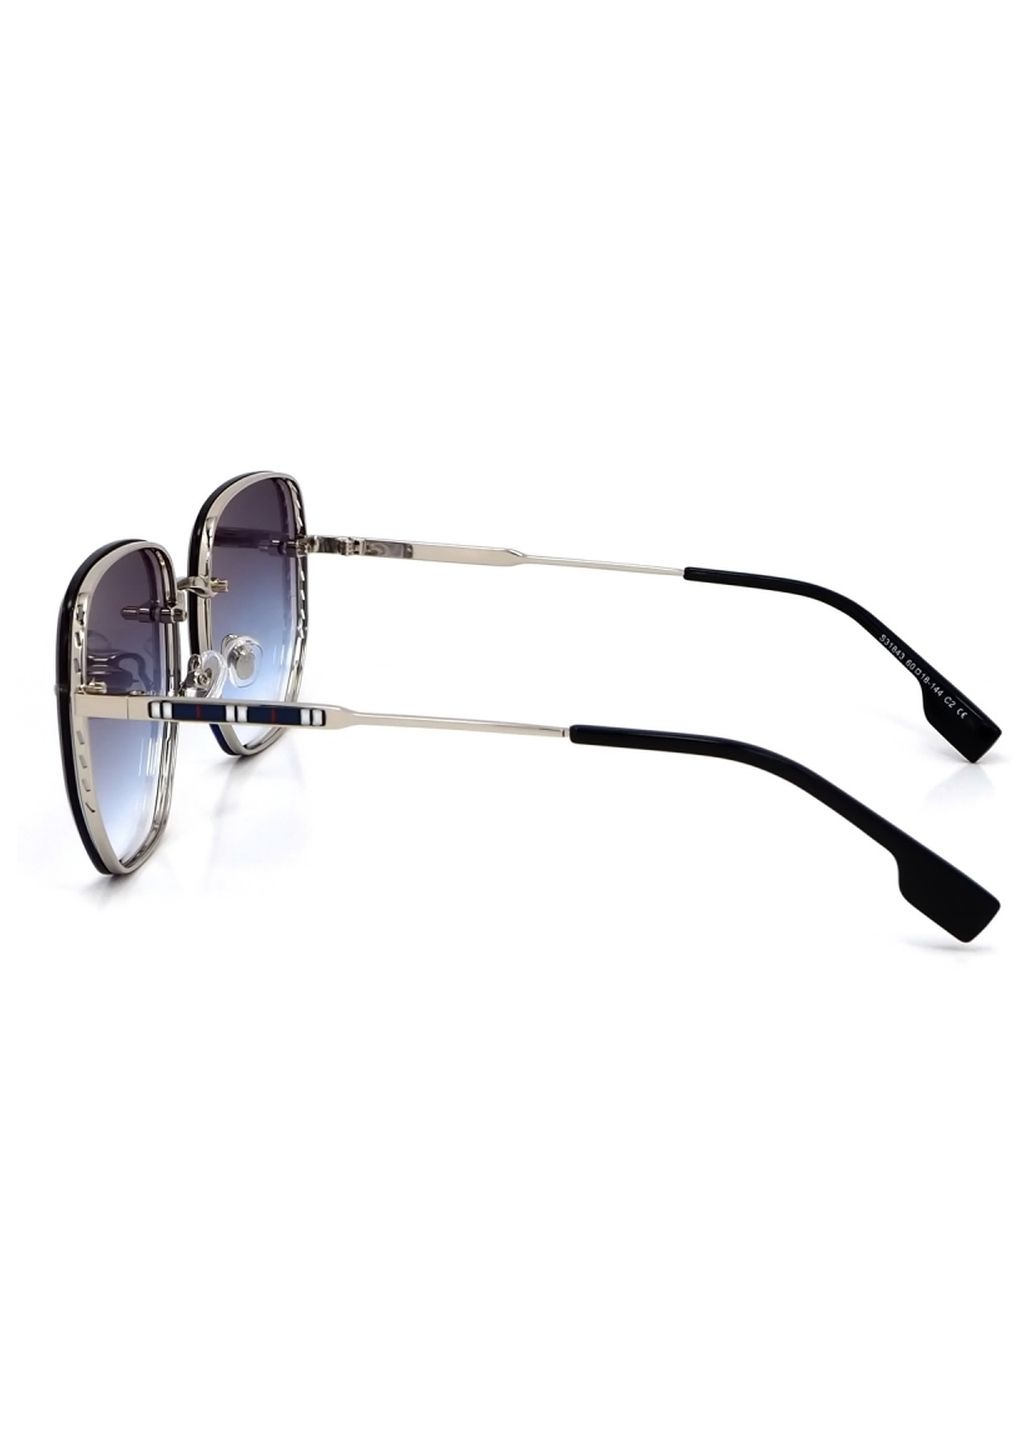 Купить Женские солнцезащитные очки Merlini с поляризацией S31843 117127 - Серебристый в интернет-магазине